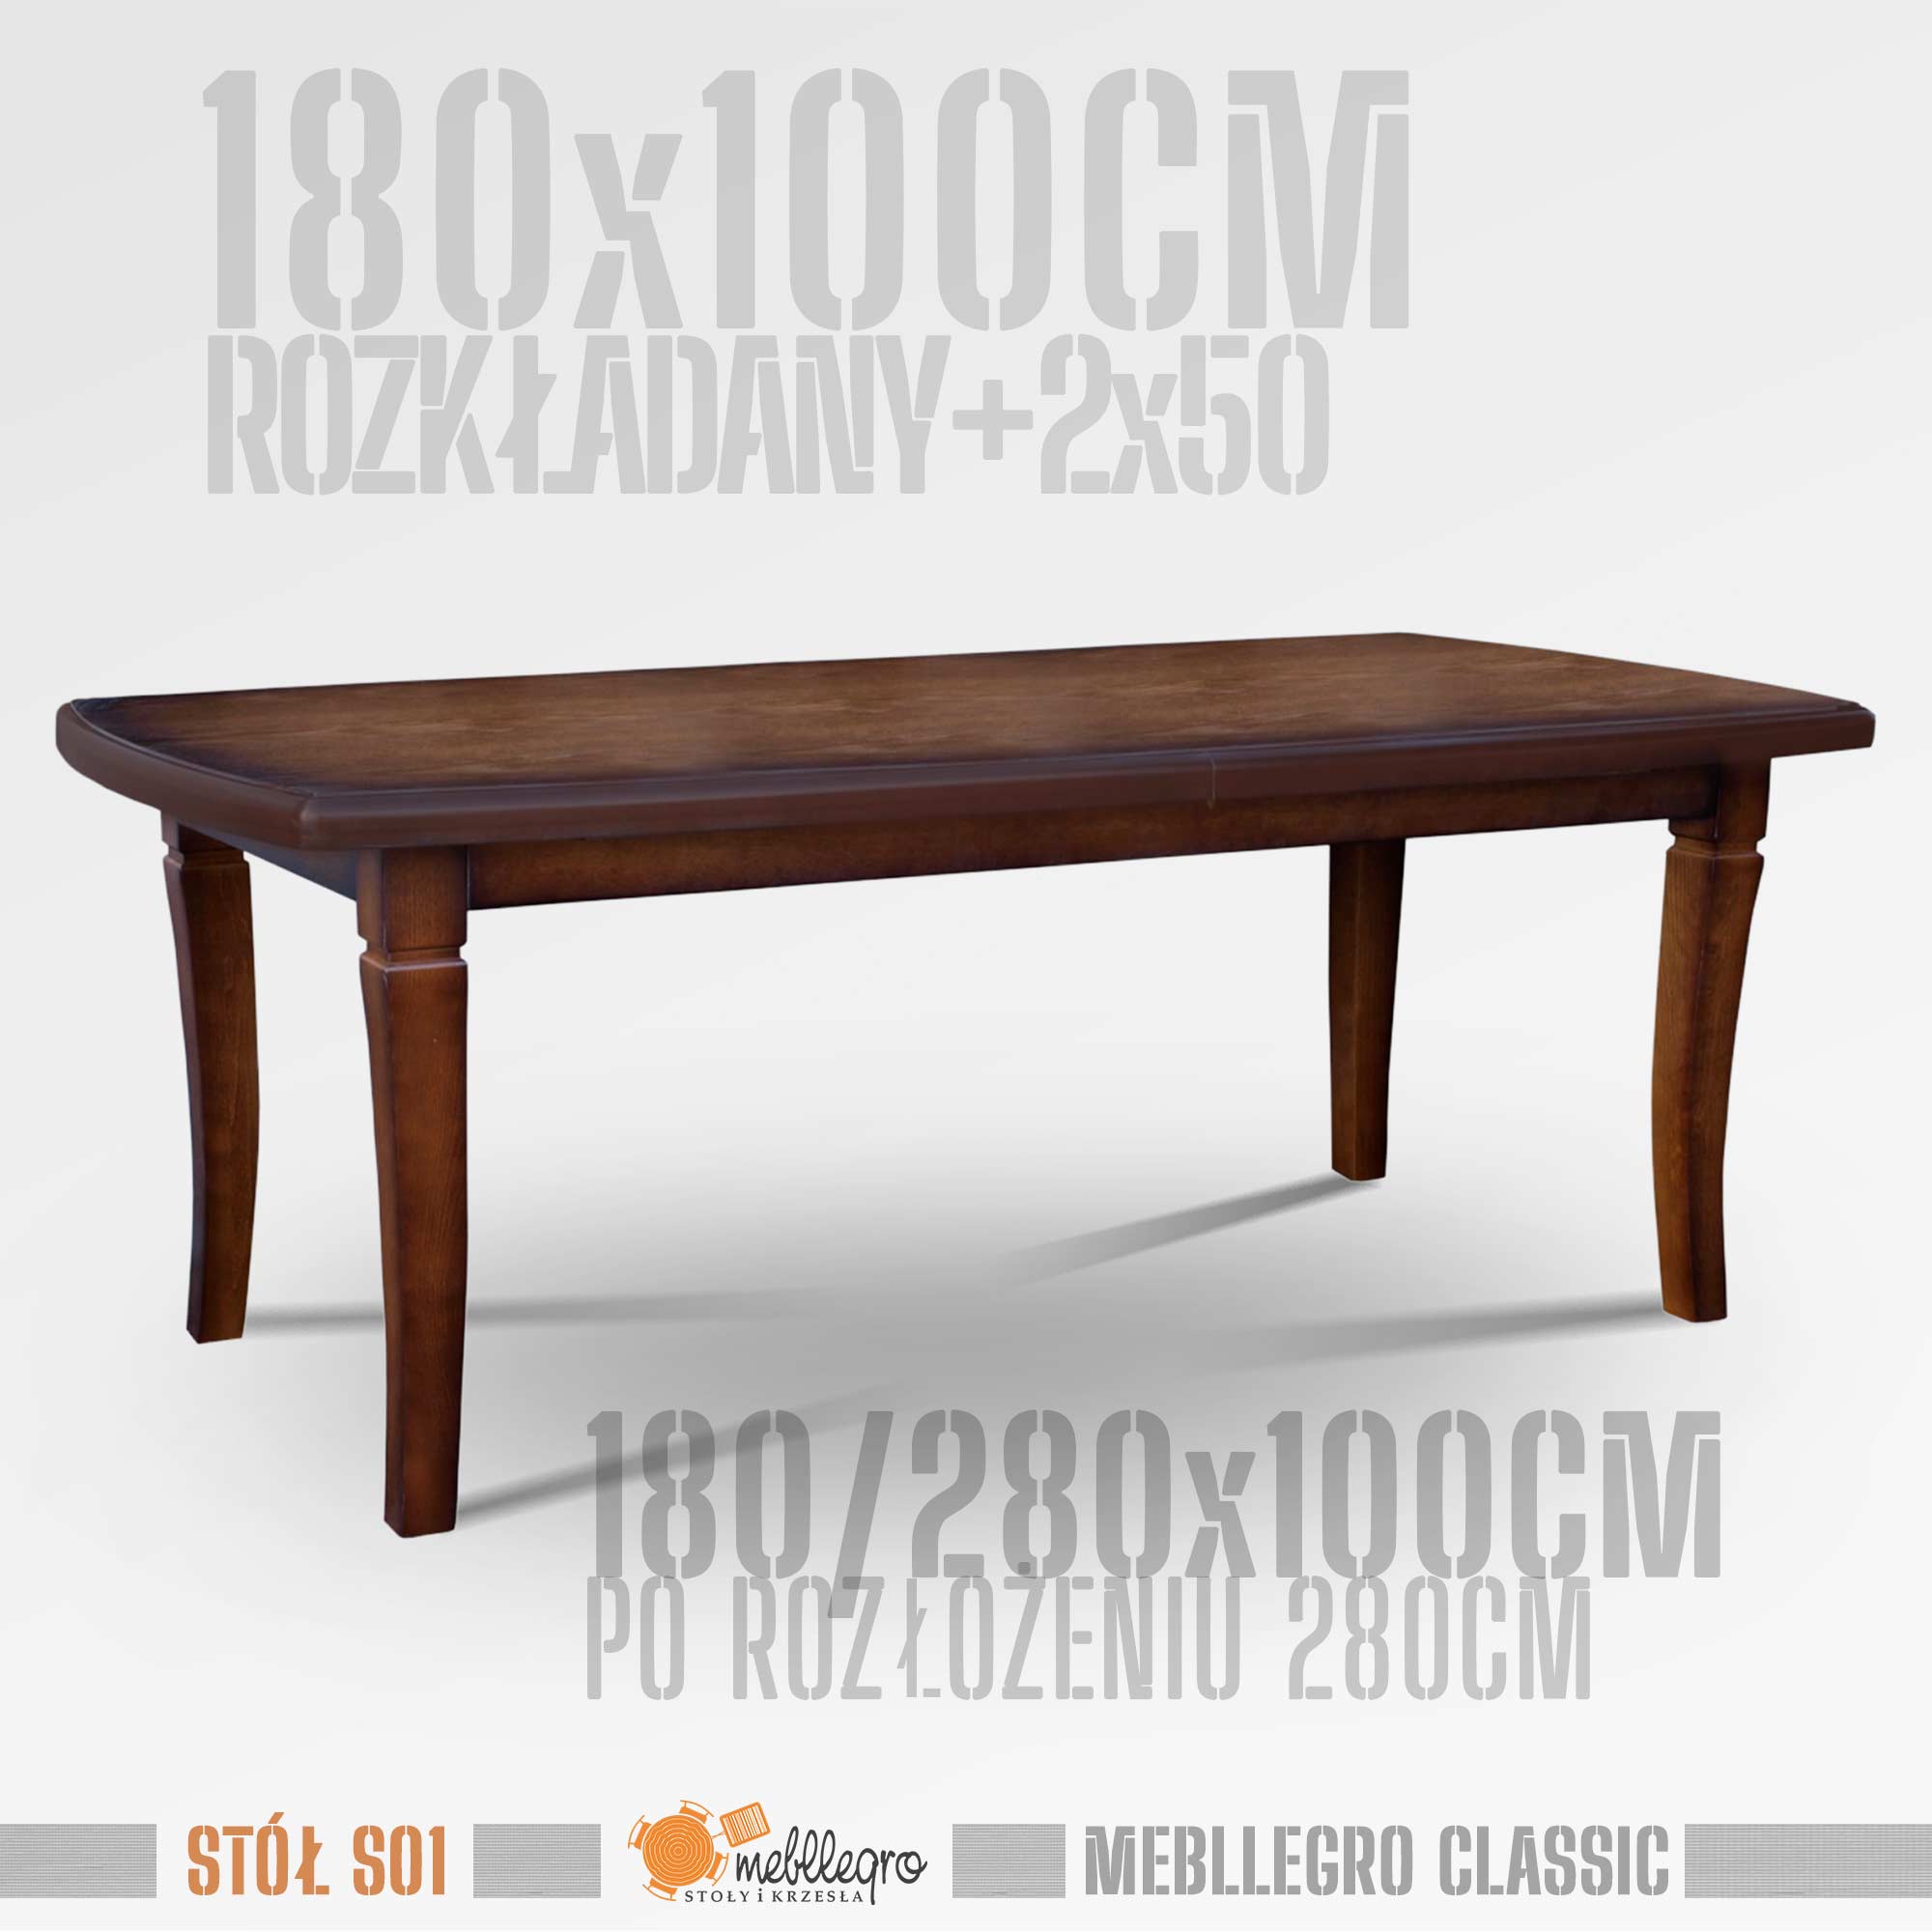 Stół drewniany S01 wymiary stołu 180x100 rozkładany do 280cm / MEBLLEGRO CLASSIC